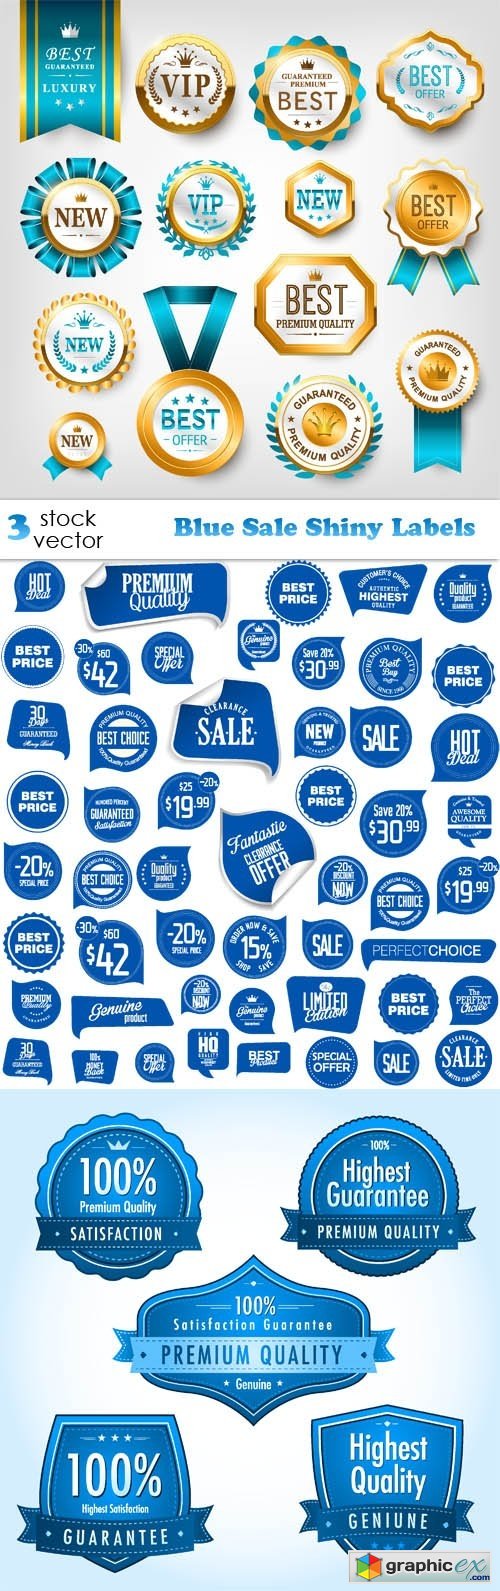 Blue Sale Shiny Labels